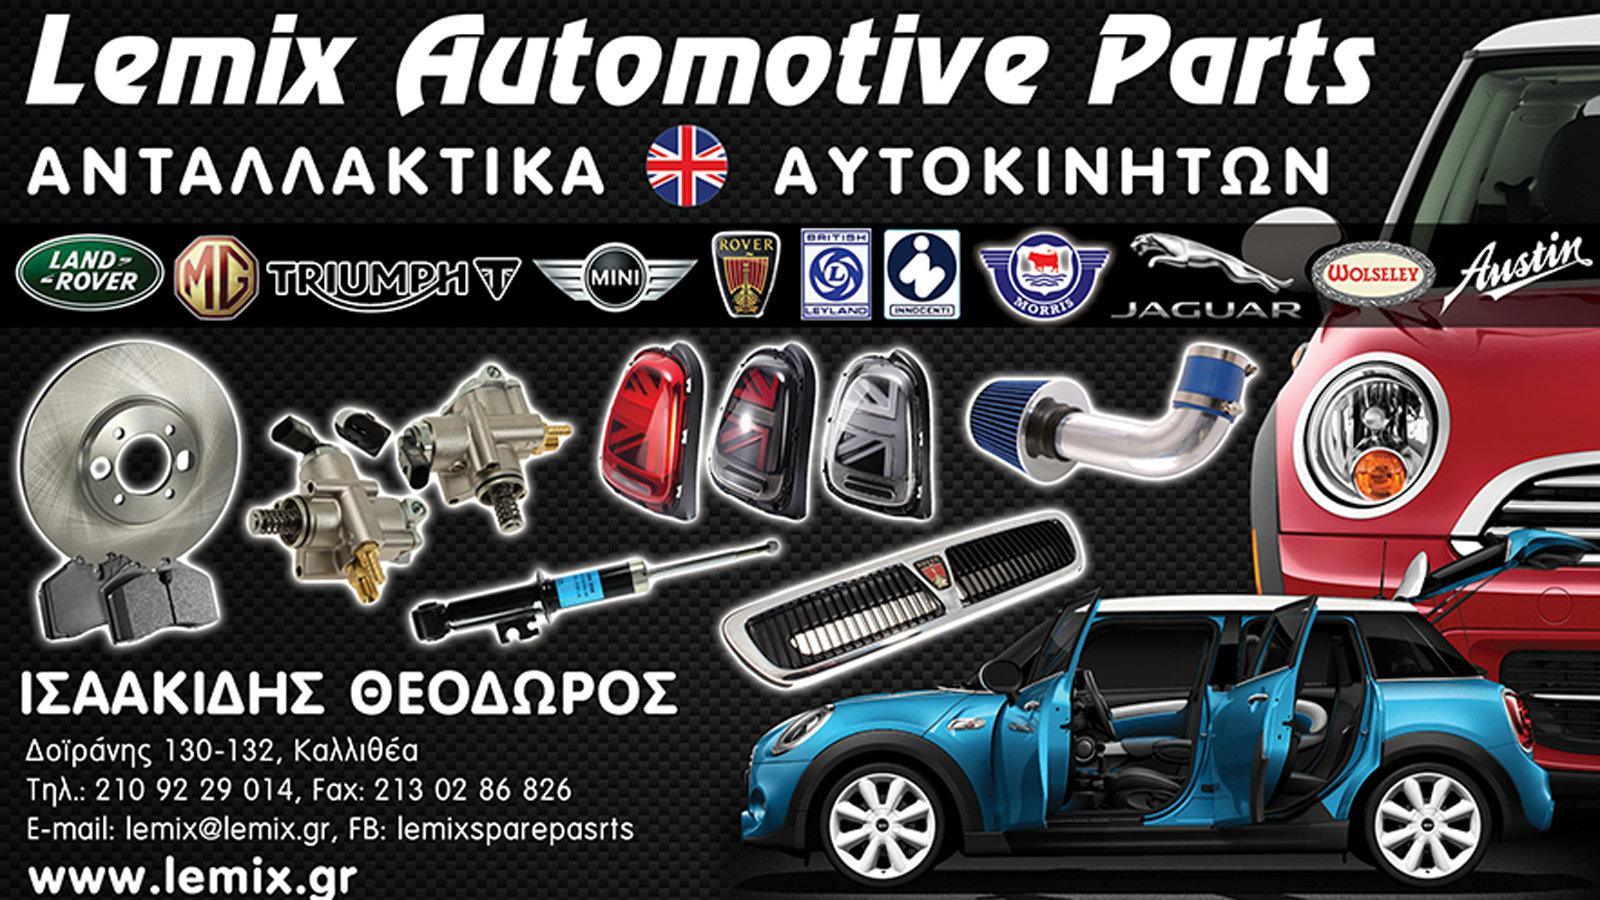 Ανταλλακτικά για Βρετανικά αυτοκίνητα στην Καλλιθέα - Lemix Automotive Parts